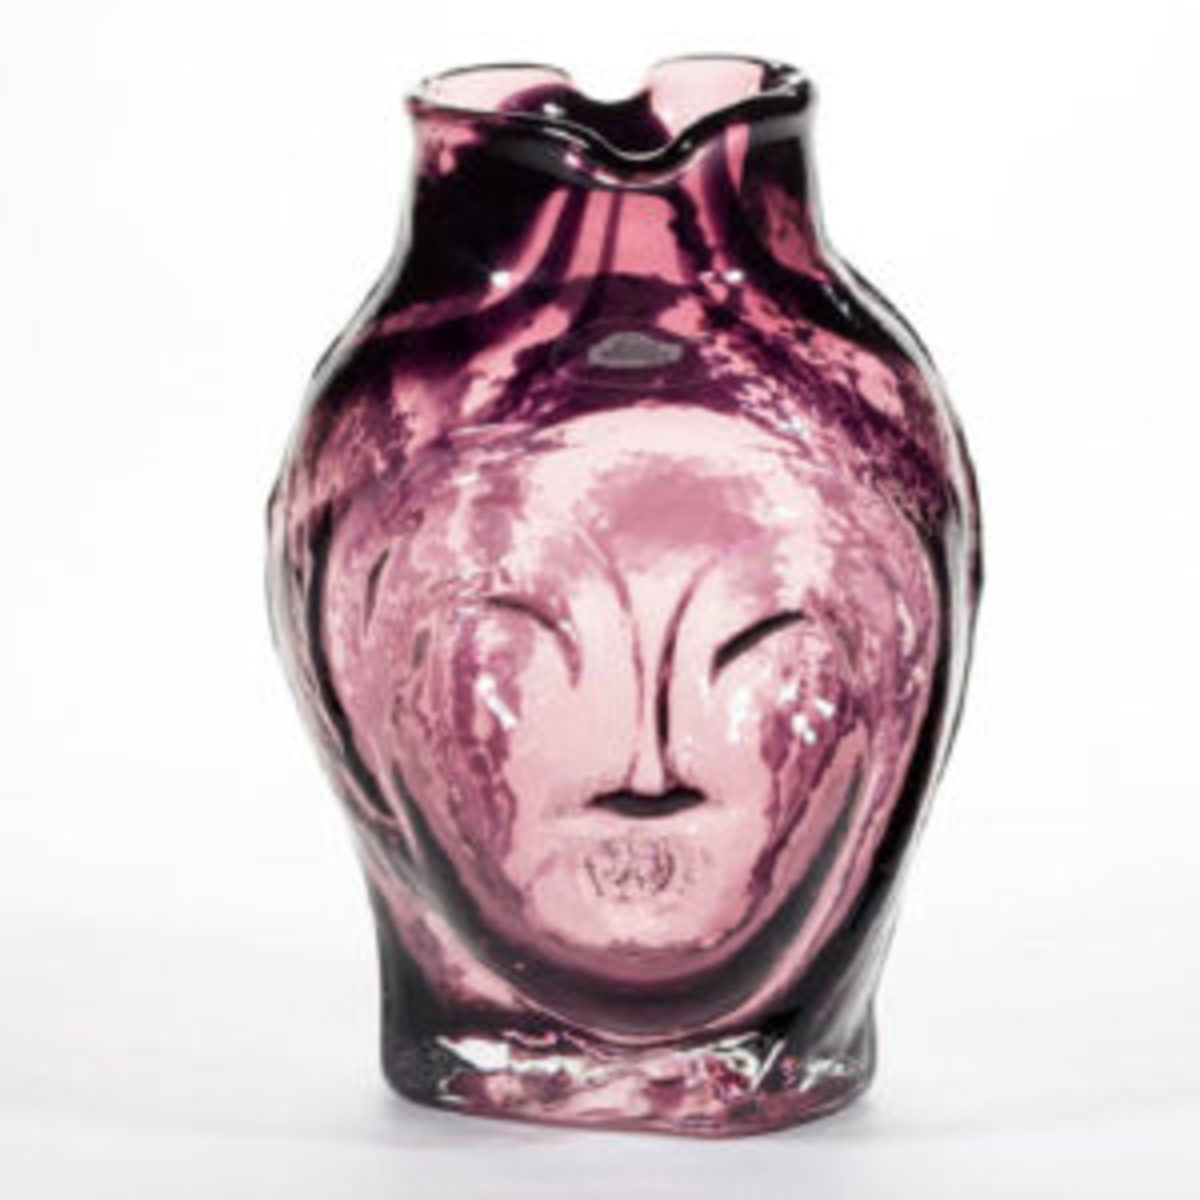 Blenko face figural vase